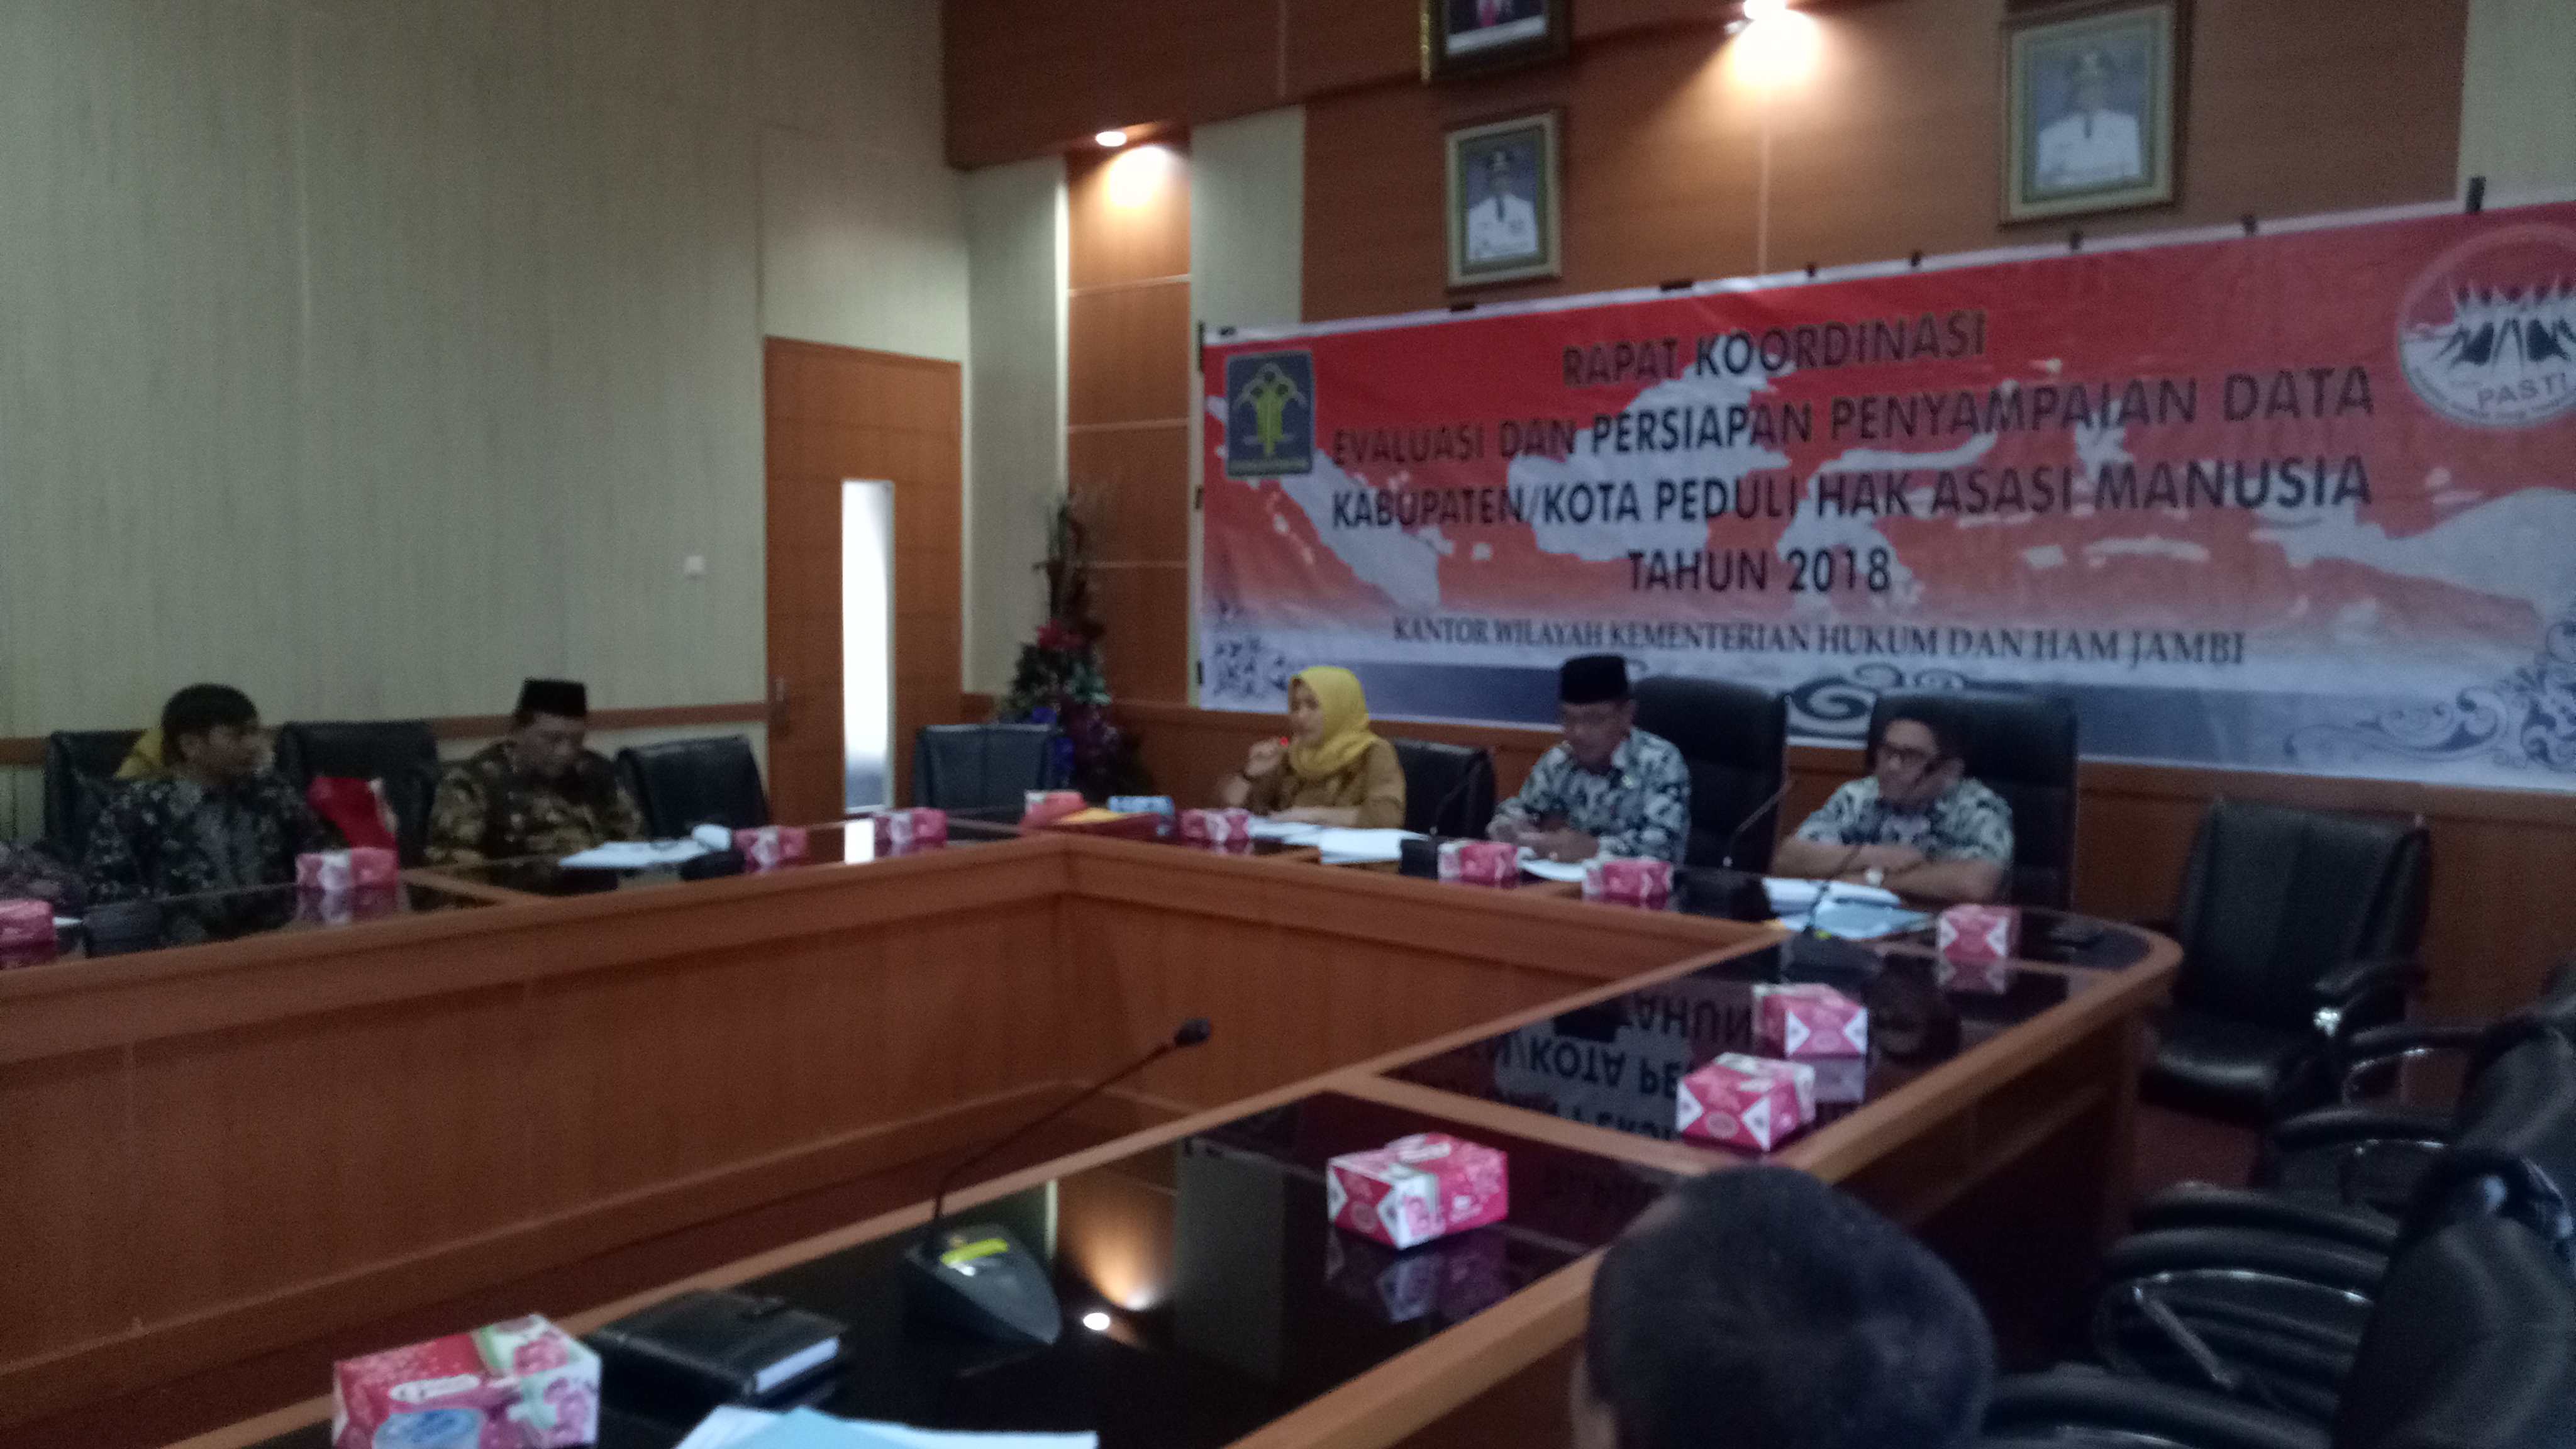 Rapat koordinasi Evaluasi dan Persiapan Penyampaian data Penilaian Kabupaten/ Kota peduli HAM di Bungo Tahun 2018